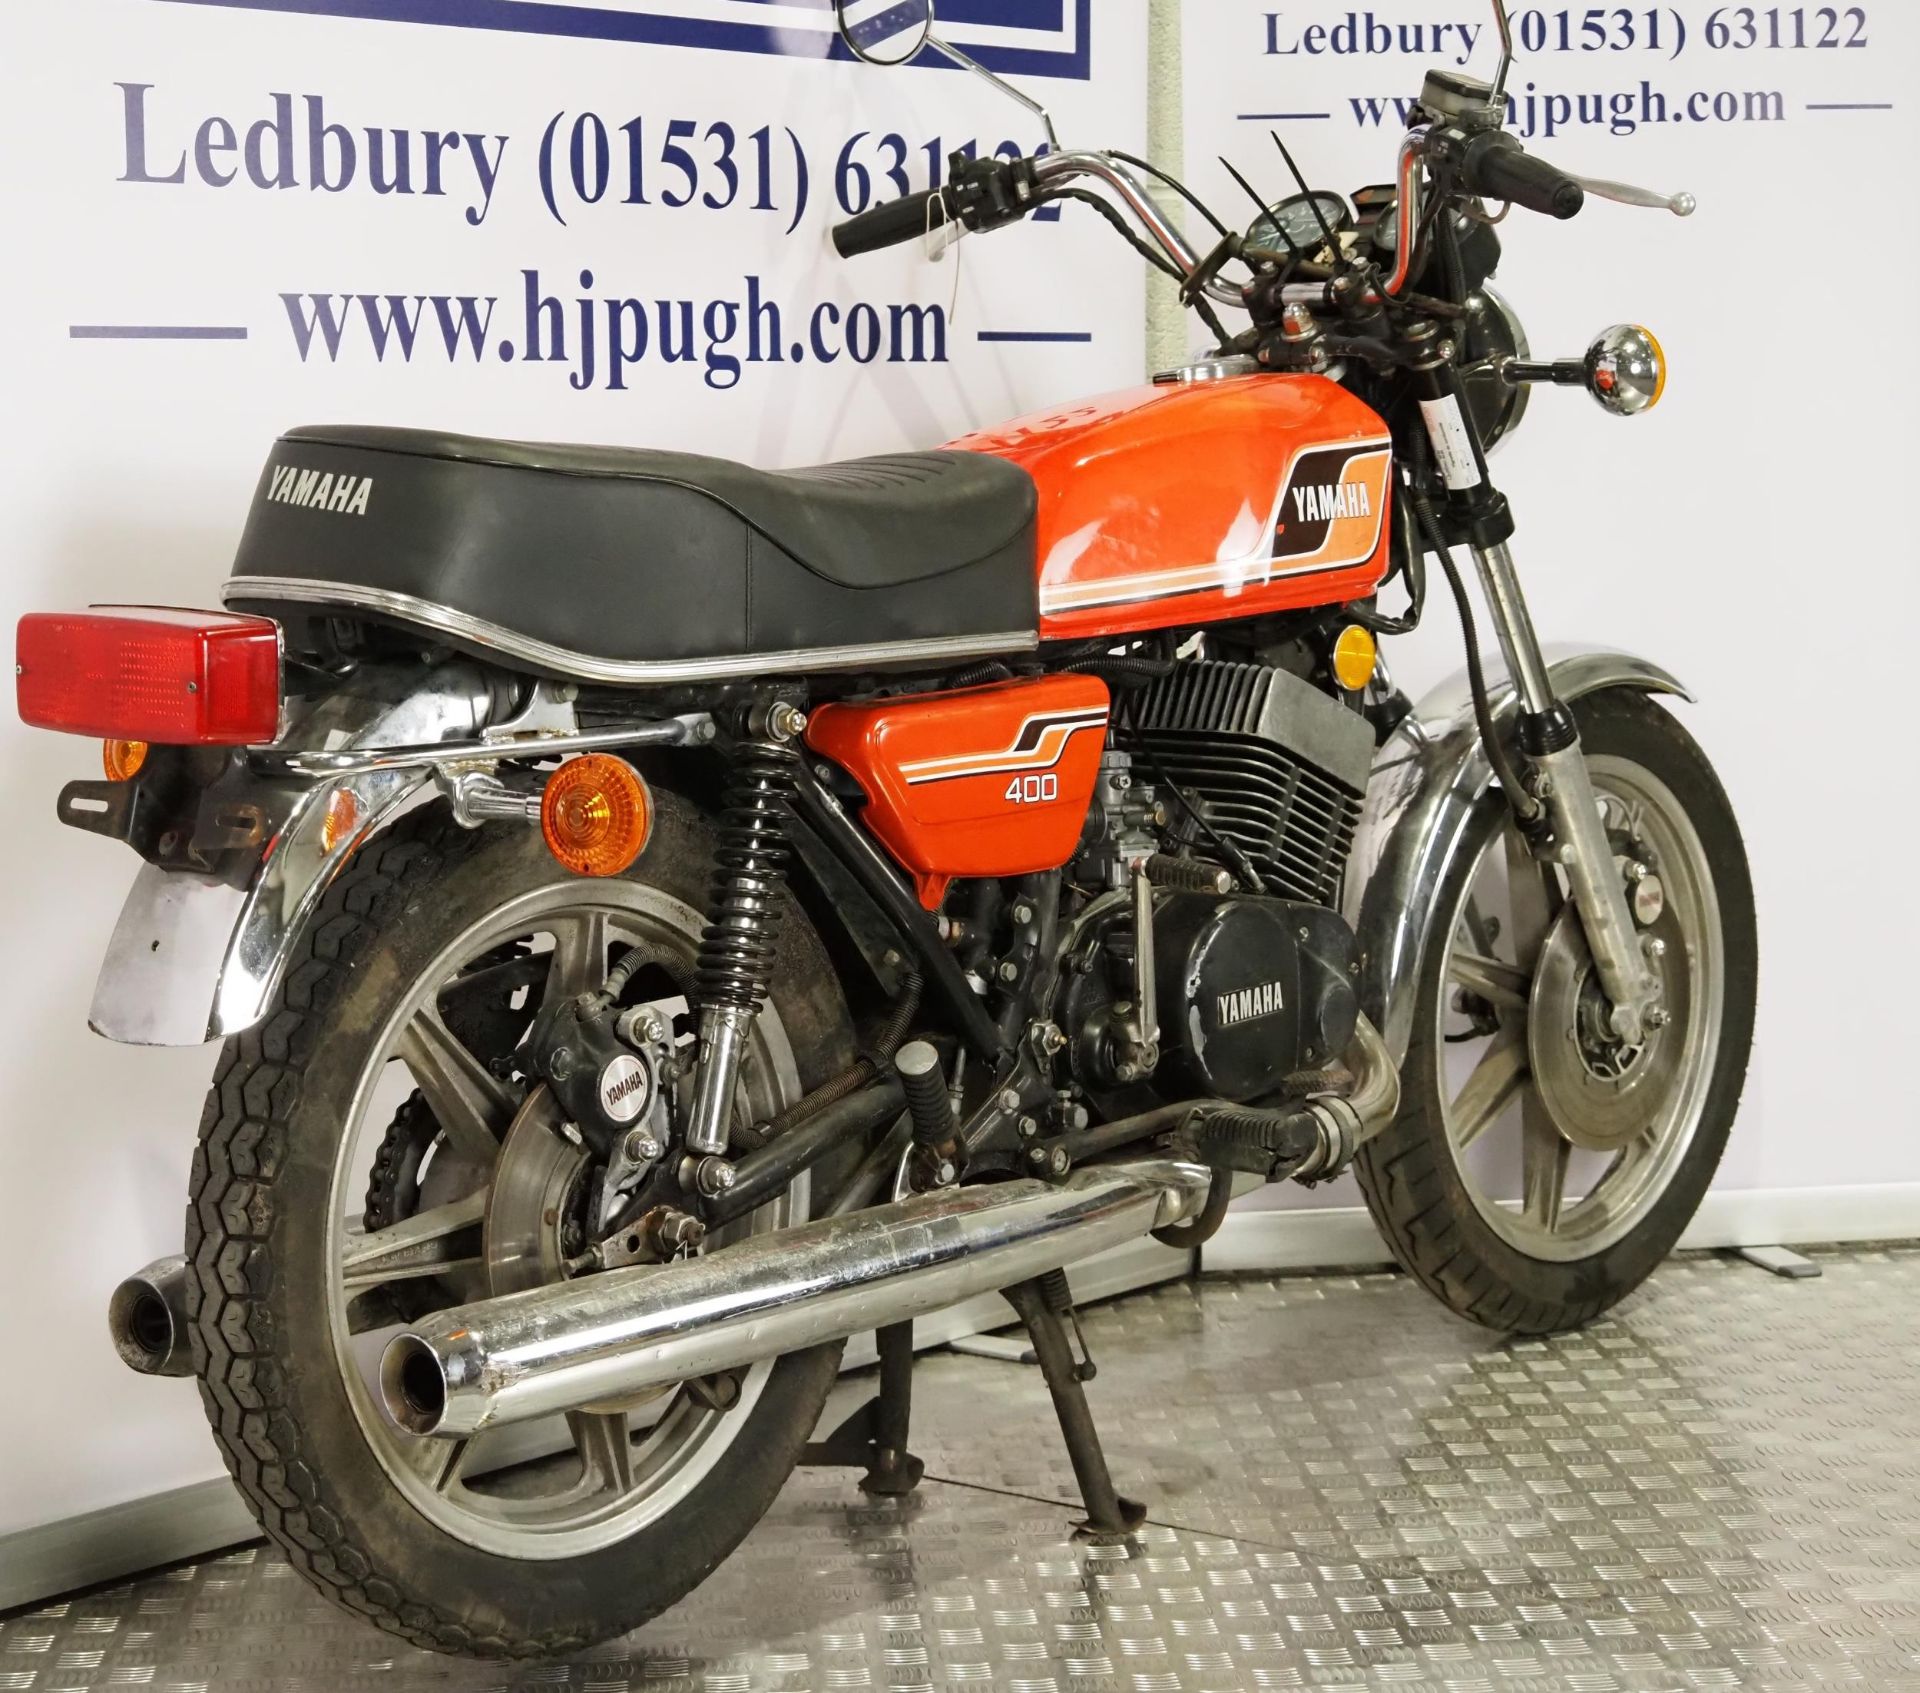 Yamaha RD400 motorcycle. 1976. 399cc. Frame No. 1A1008827 Engine No. 1A1-308468 Runs and rides. - Bild 3 aus 6